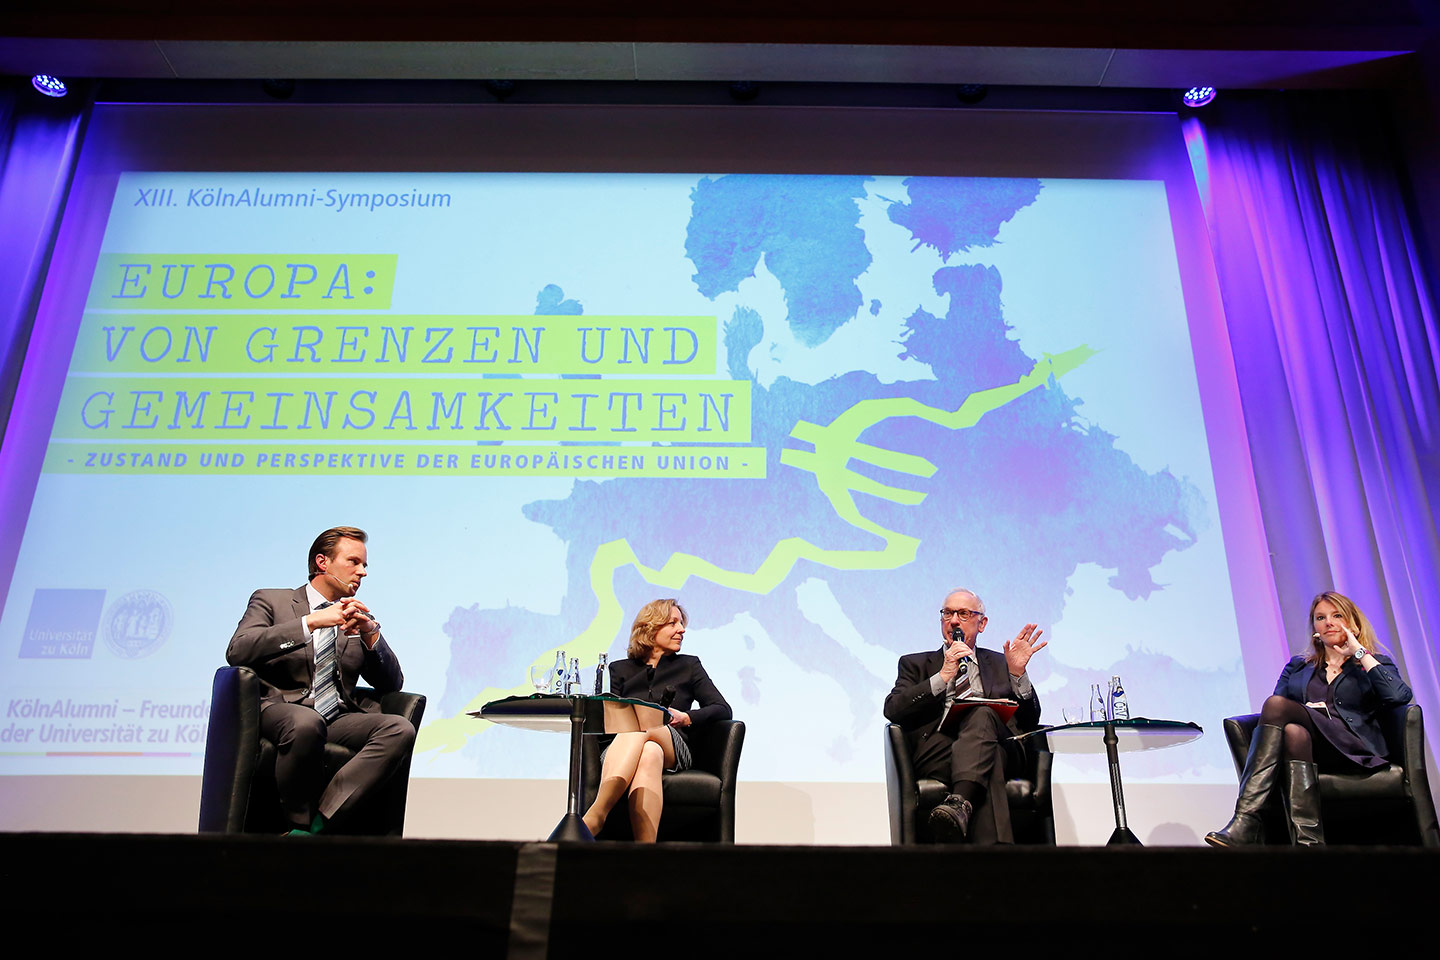 Panel discussion, text in the background: XIII. KölnAlumni-Symposium, EUROPA:  VON GRENZEN UND GEMEINSAMKEITEN, ZUSTAND UND PERSPEKTIVE DER EUROPÄISCHEN UNION